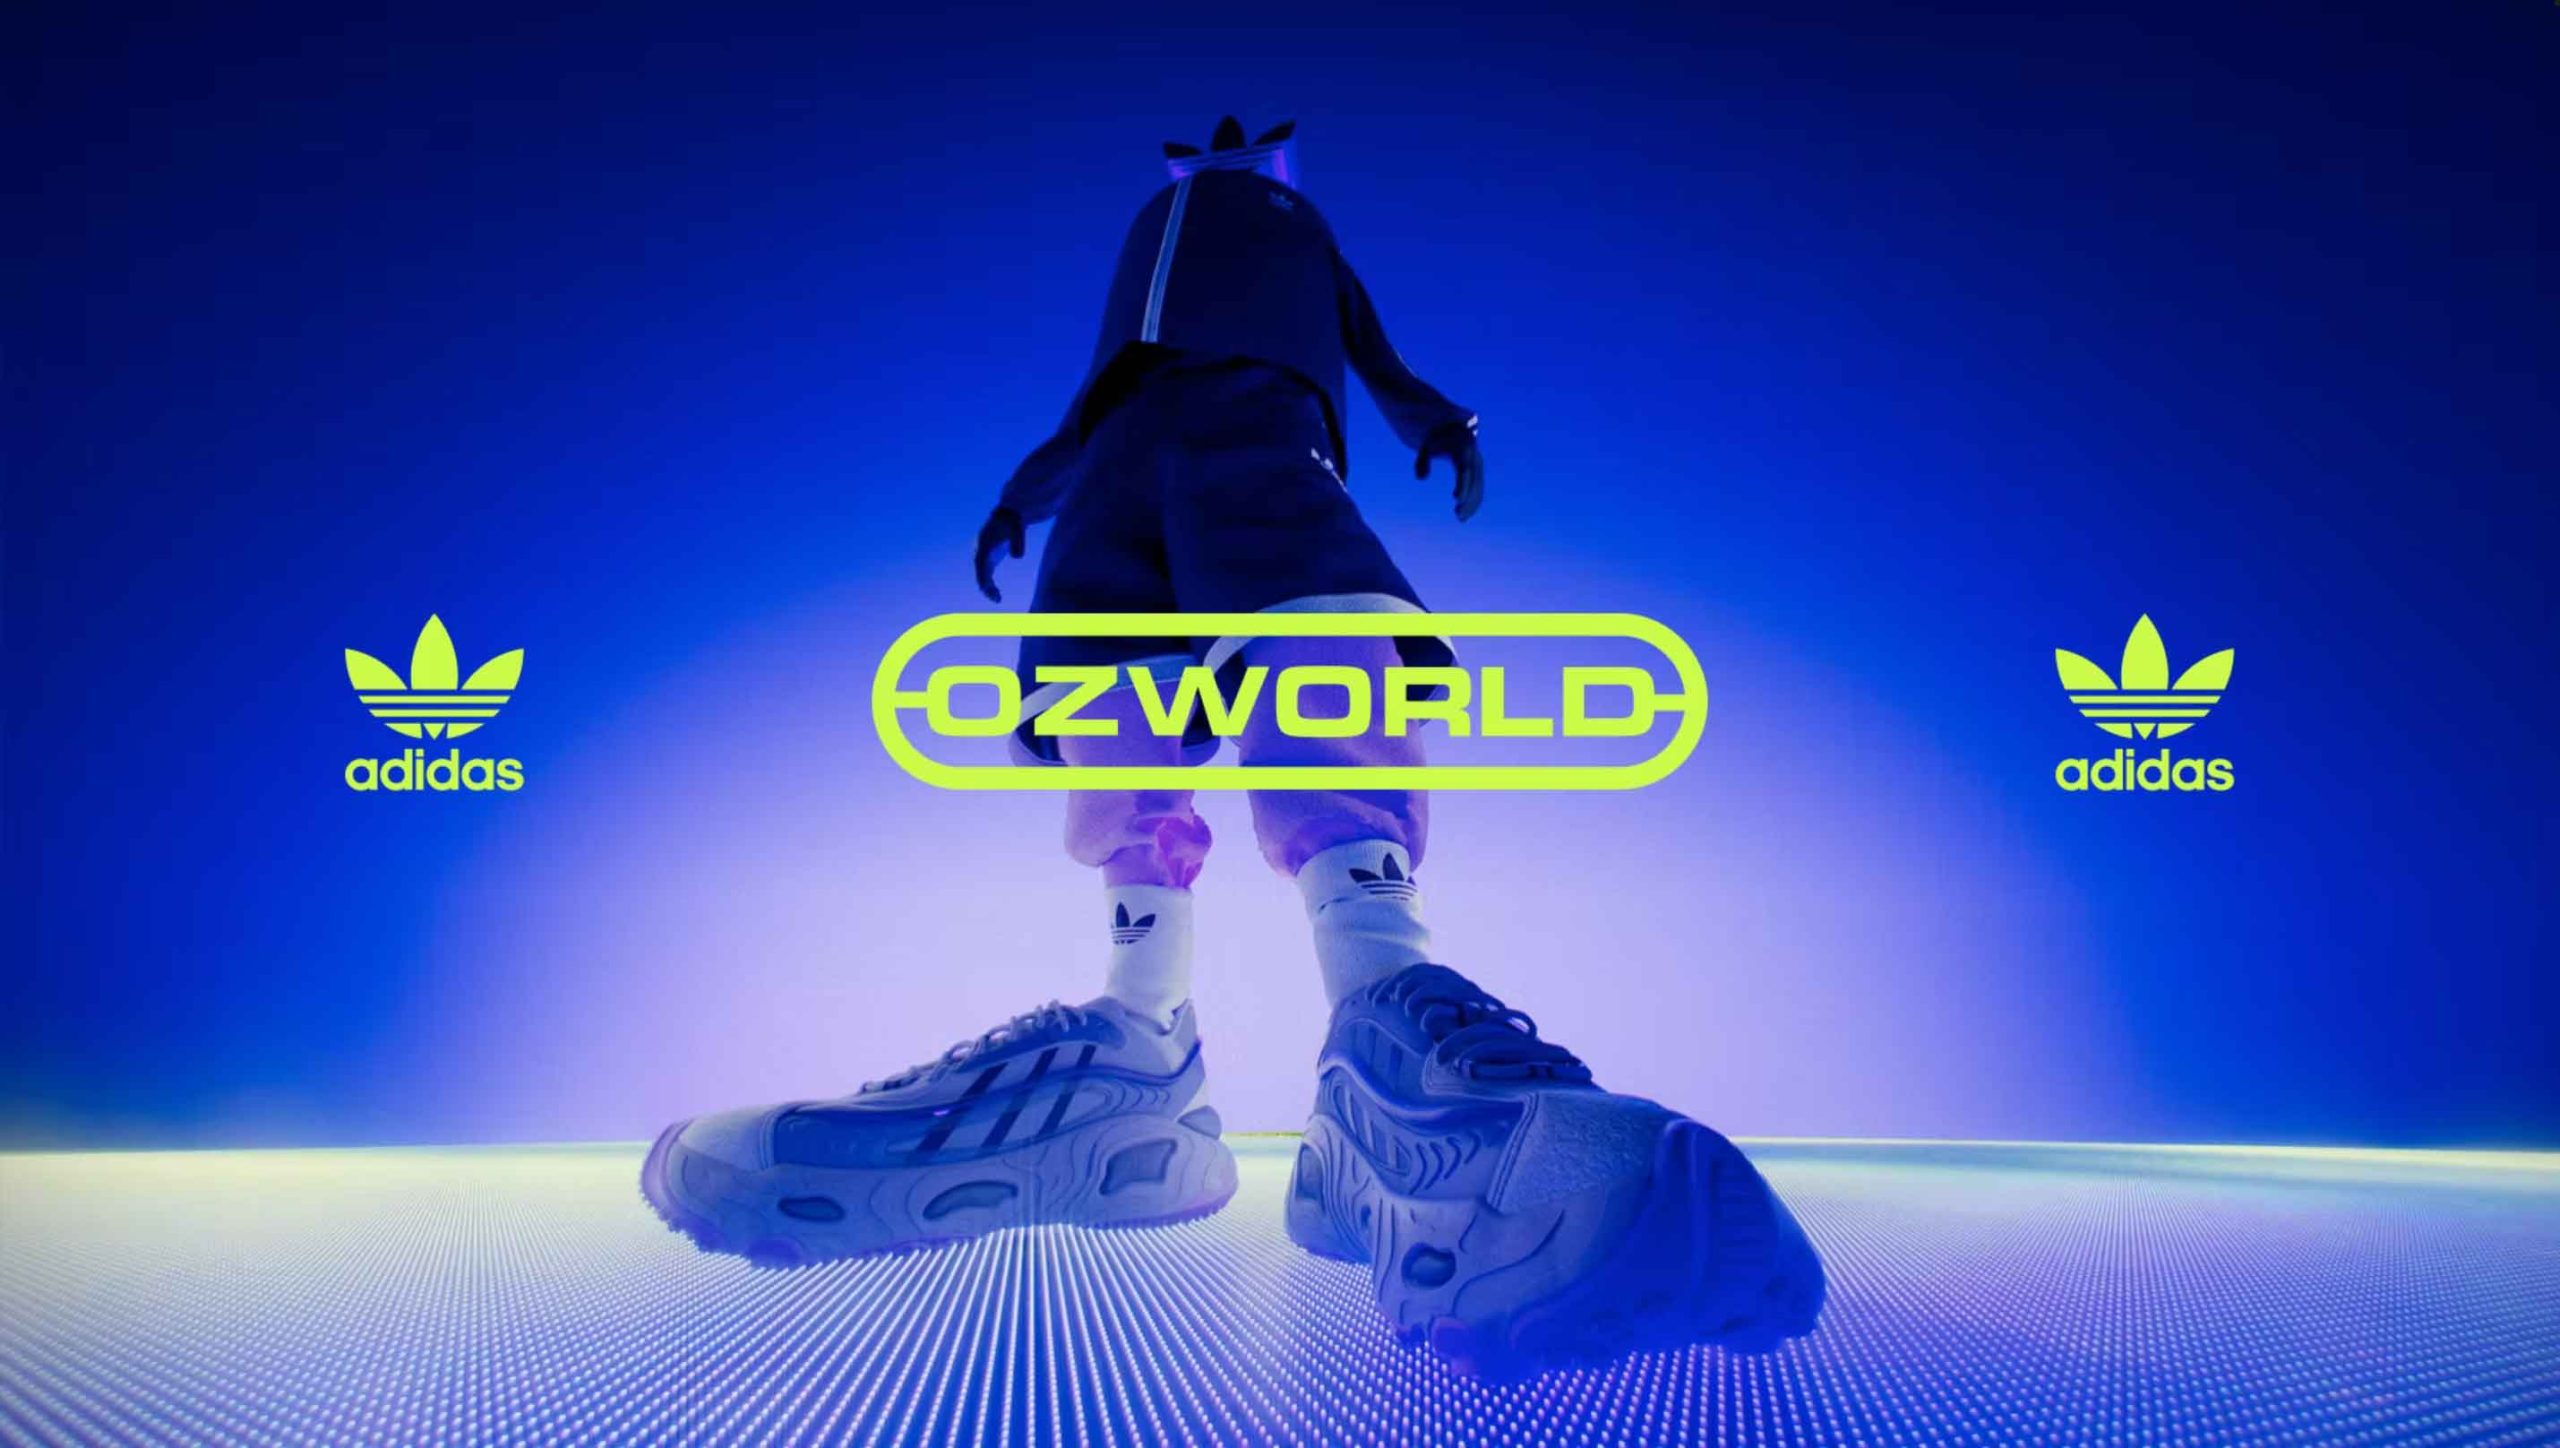 Recitar élite Prematuro Jam3 Drops Ozworld Hype Reel for Adidas Originals - Motion design - STASH :  Motion design – STASH